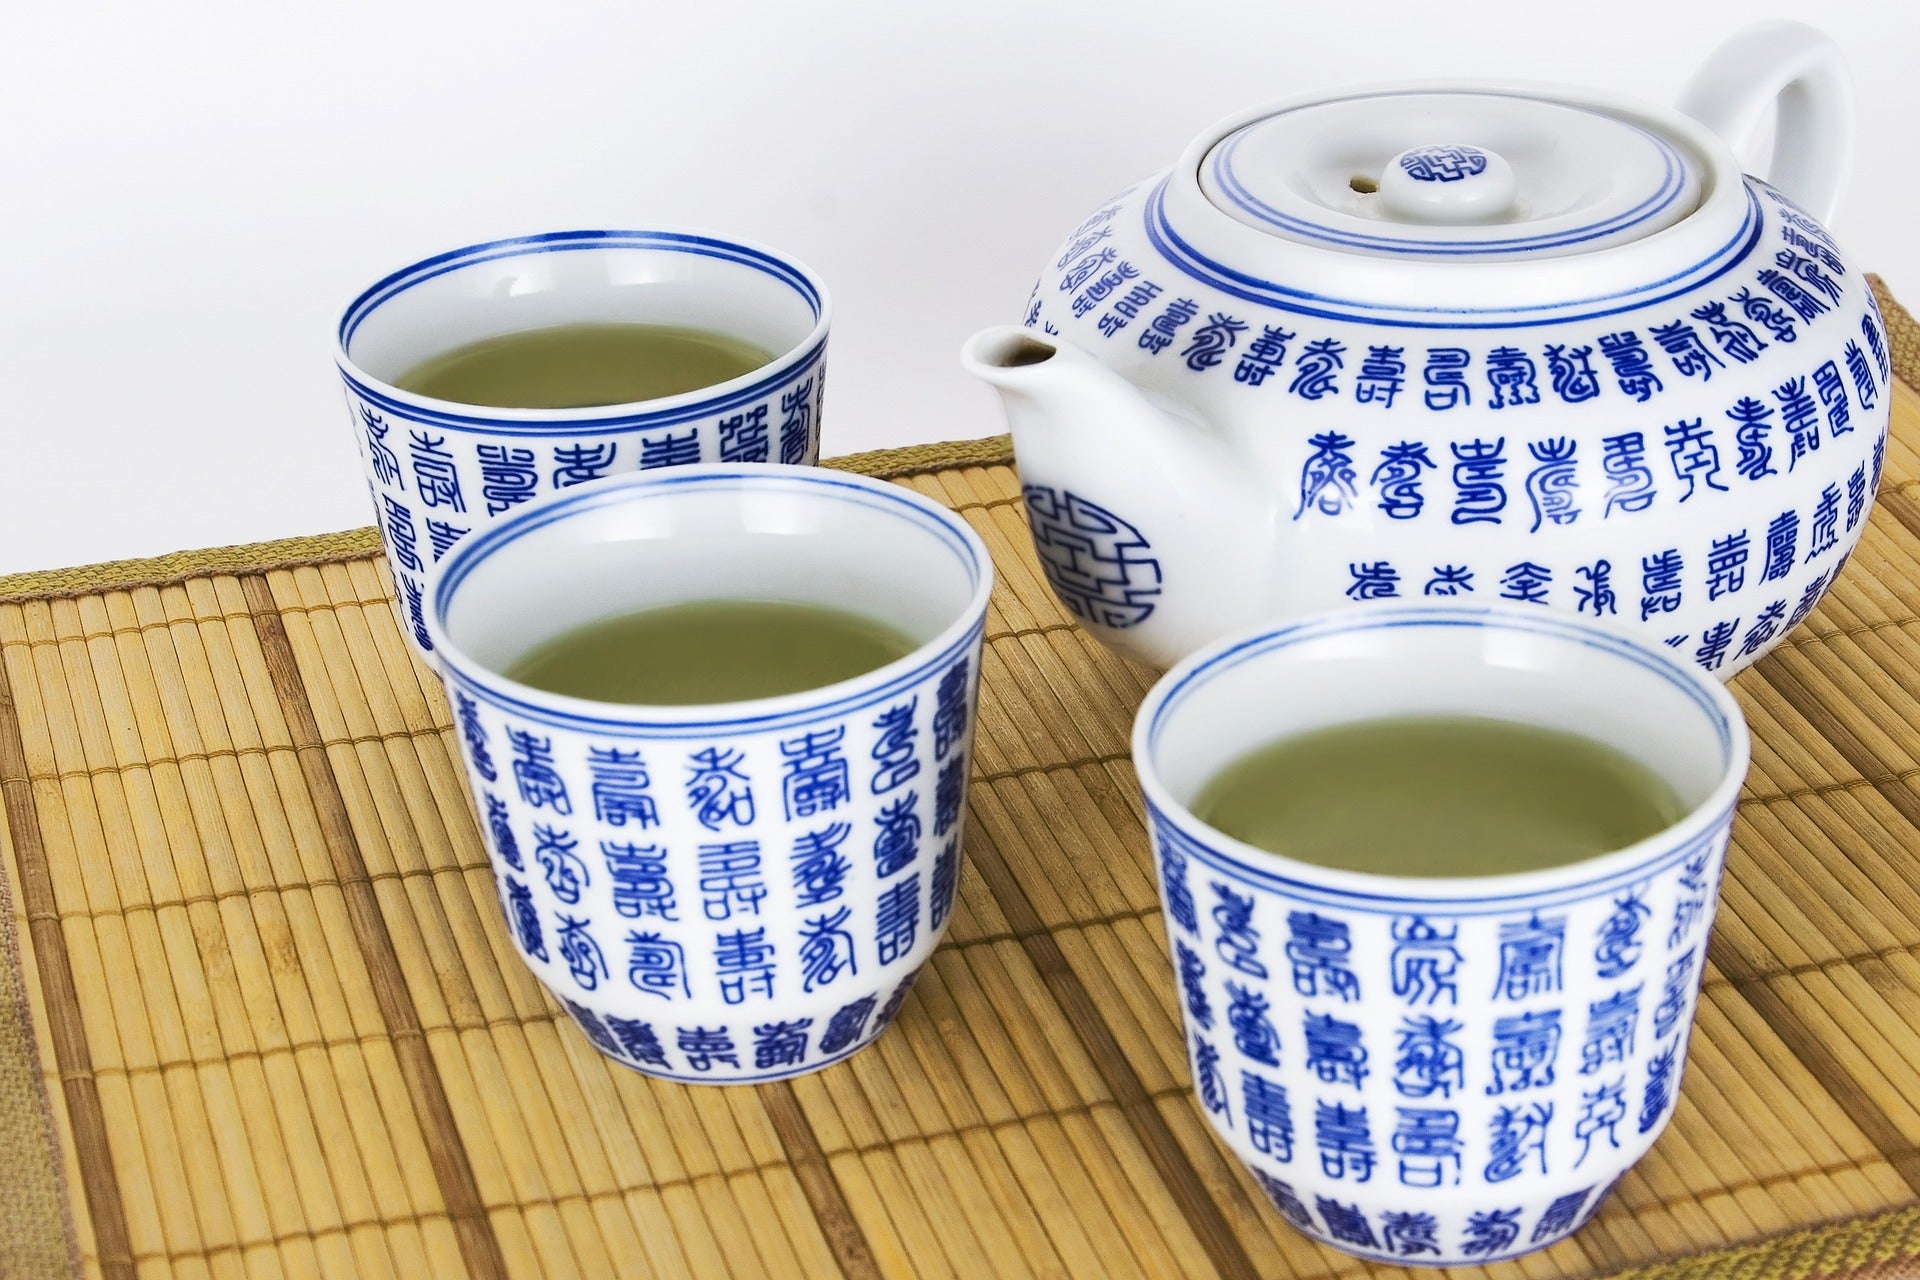 Cups of green tea.